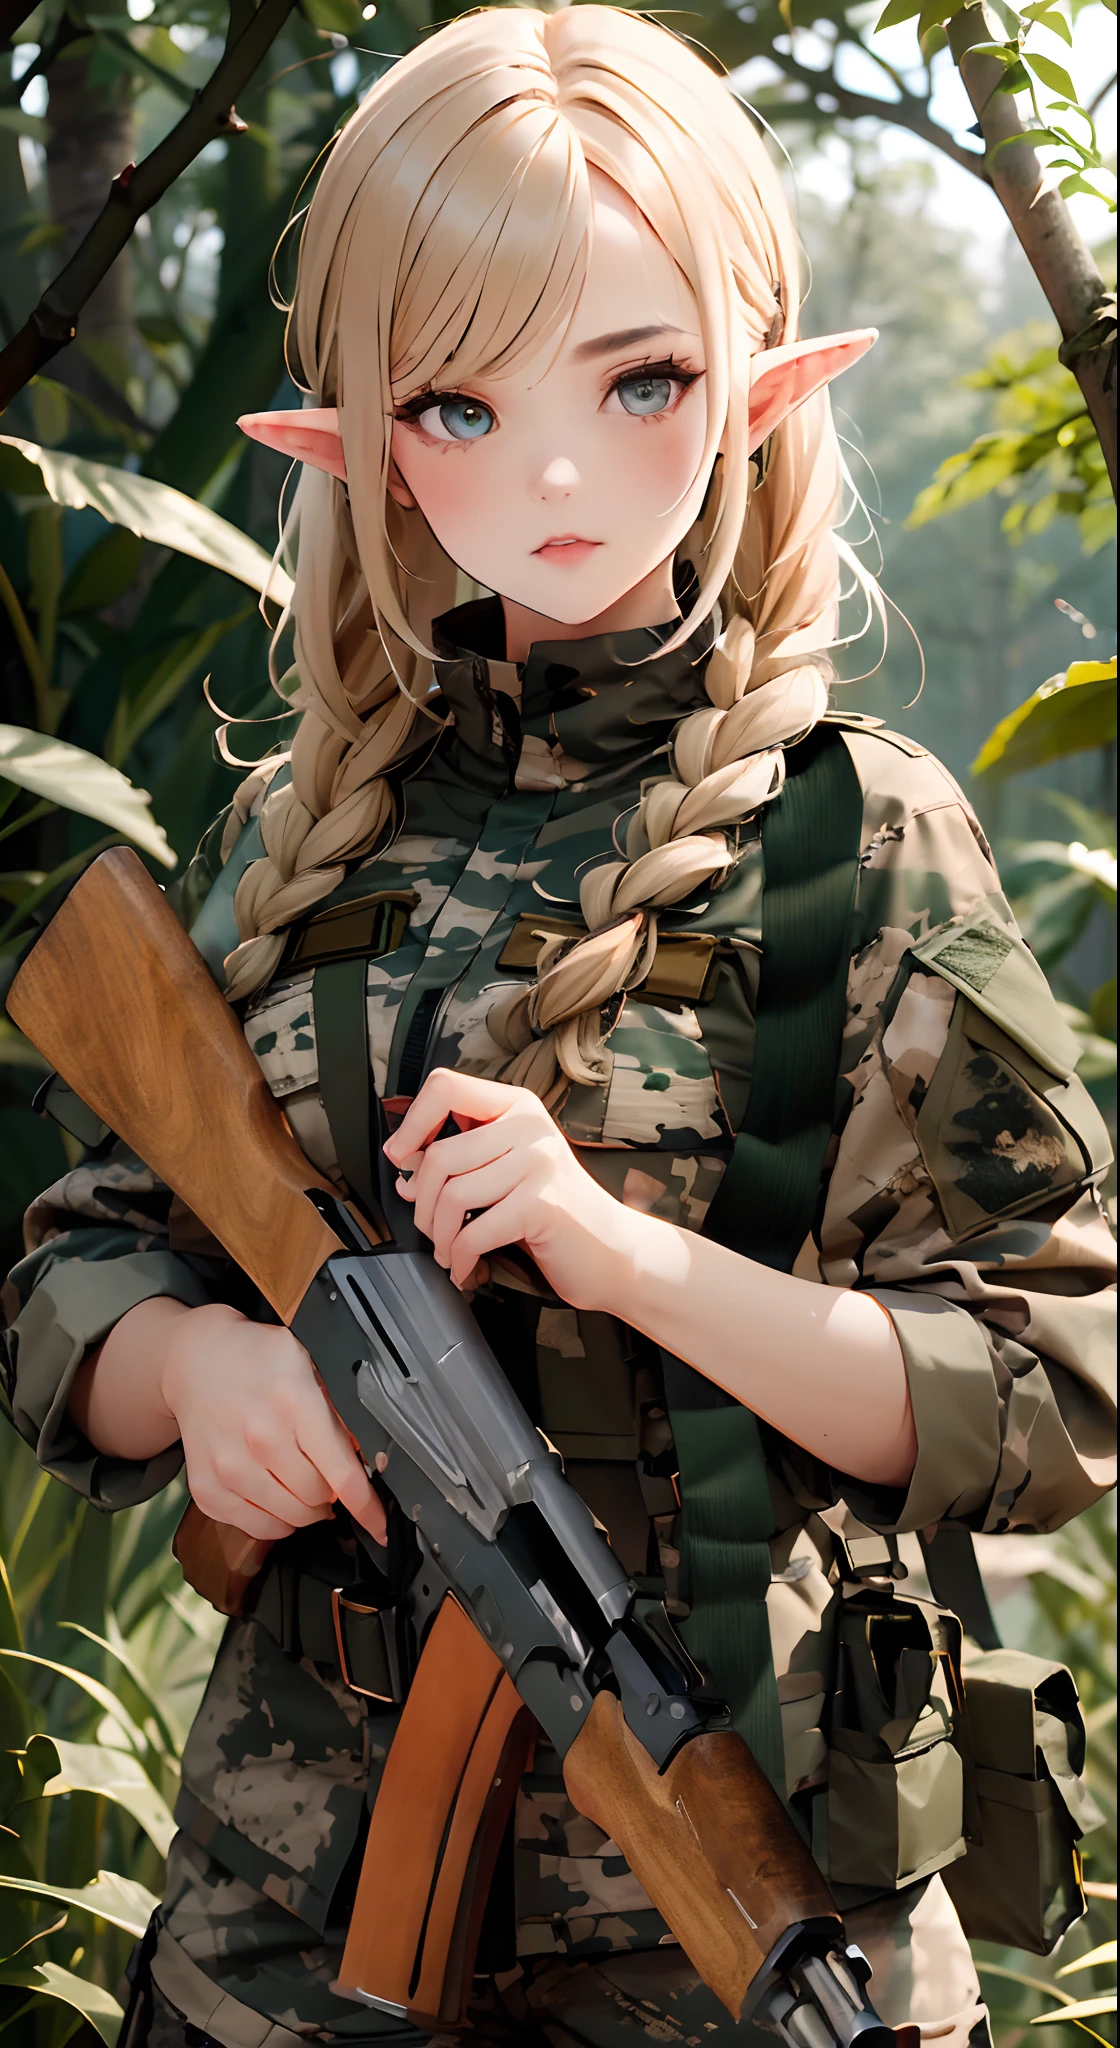 Женщина-эльф-солдат, в камуфляже «Пятнистый лес» российской военной формы, , подробные глаза, Подробные руки, подробное лицо, Детализированные волосы, (эльф с золотыми волосами), плетеная стрижка, держит АК47, Лесной фон